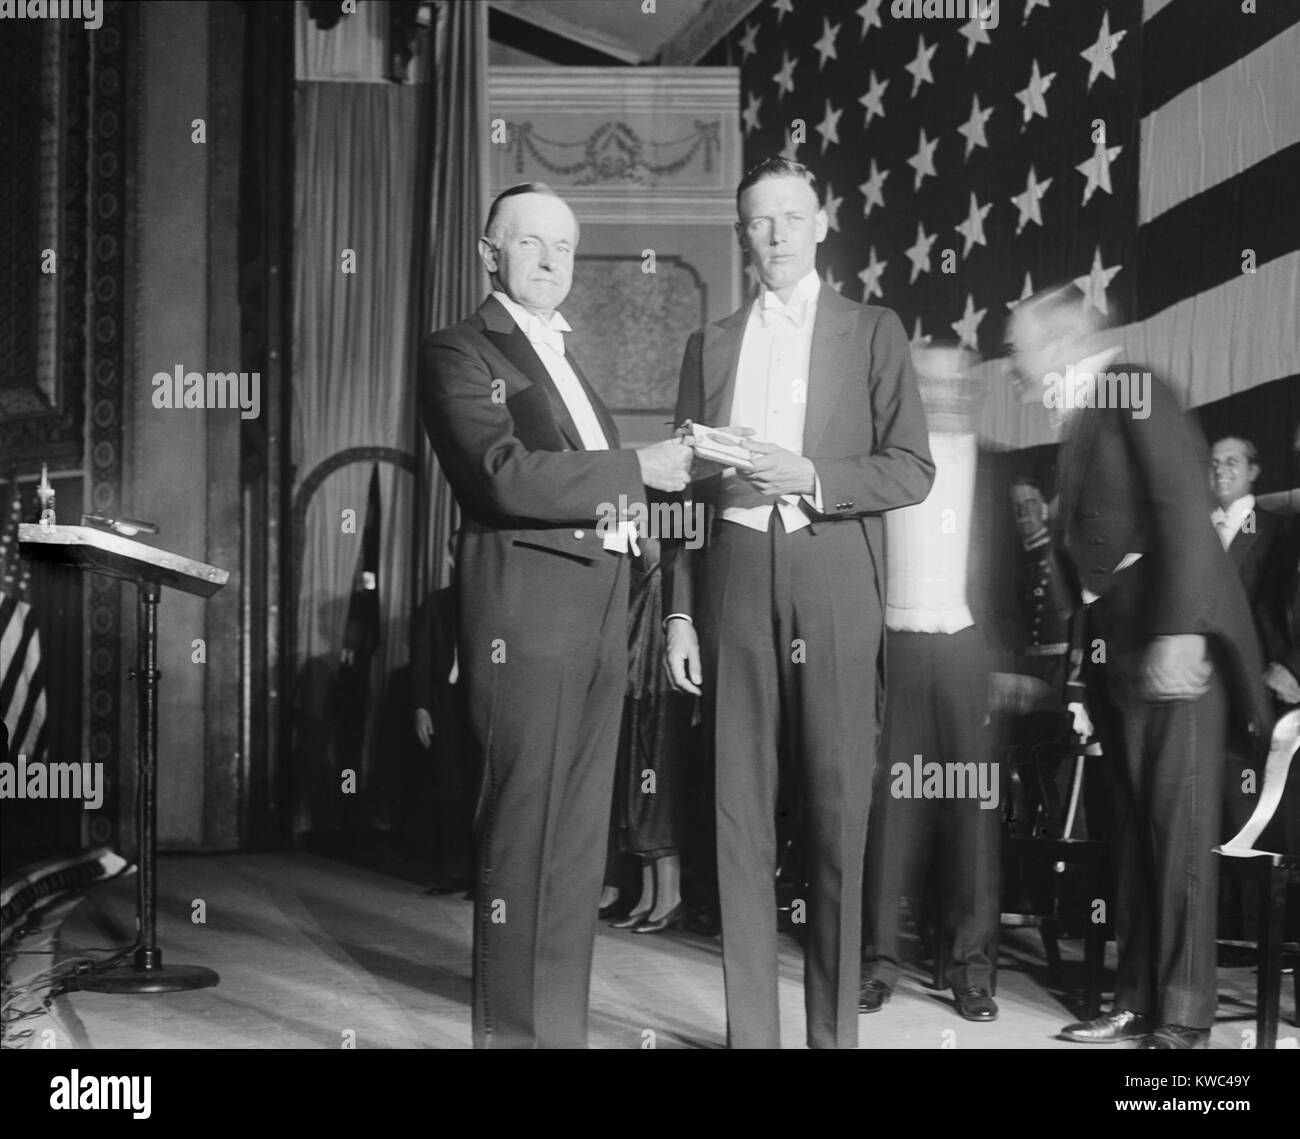 Le président Calvin Coolidge présente Charles Lindbergh avec Médaille d'honneur du Congrès. 1927 novembre. Lindbergh était capitaine dans l'US Army Air Corps Réserver quand il a fait sa nouvelle ville de New York à Paris vol sur les 20 et 21 mai 1927. (BSLOC 2015 15 144) Banque D'Images